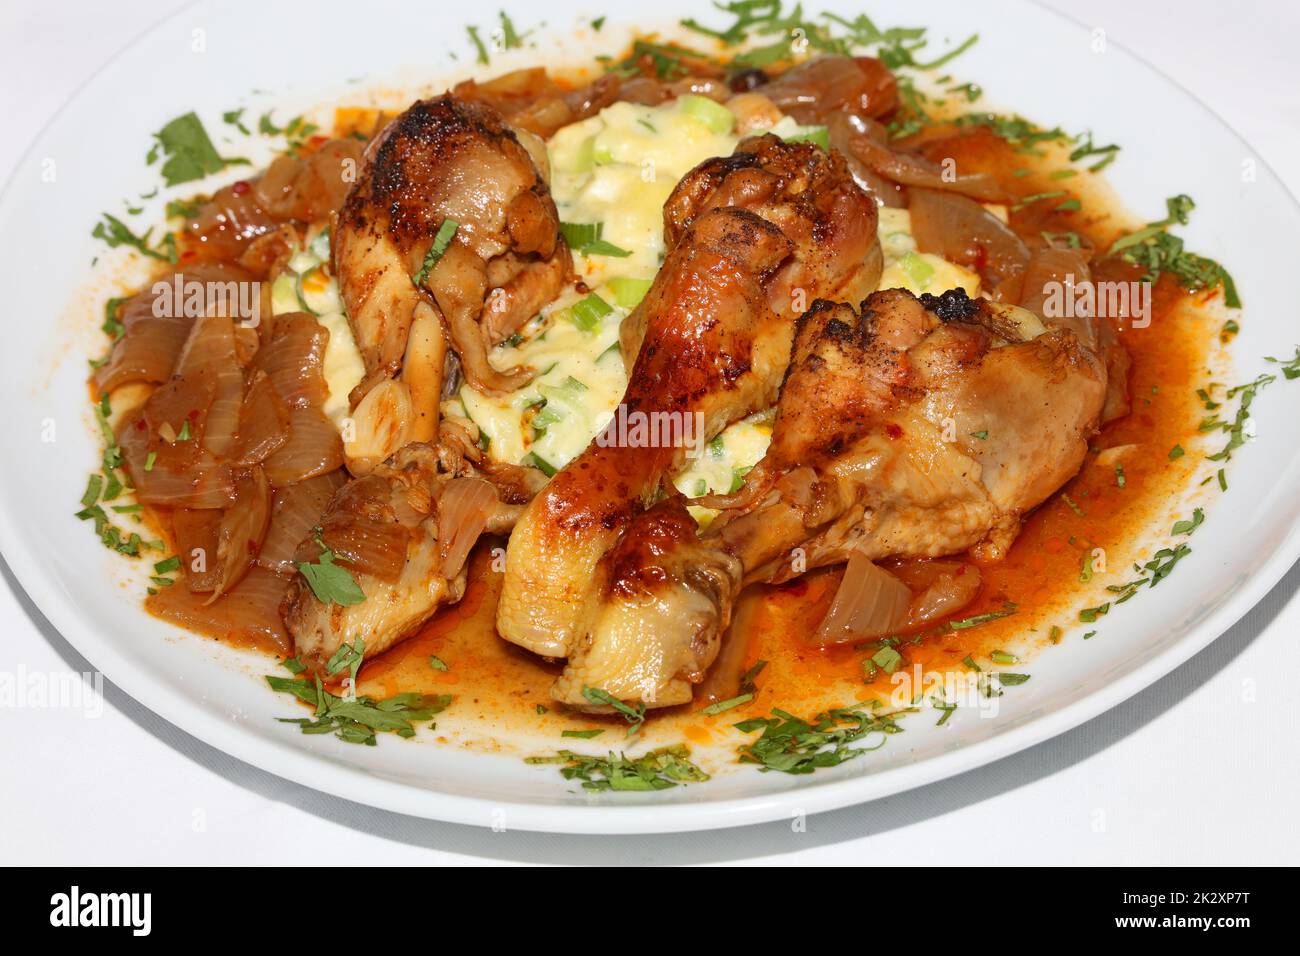 Cosce di pollo primo piano brasate con cipolle di macellaio servite con purè di patate alle erbe cucina greca moderne stampe di alta qualità Foto Stock